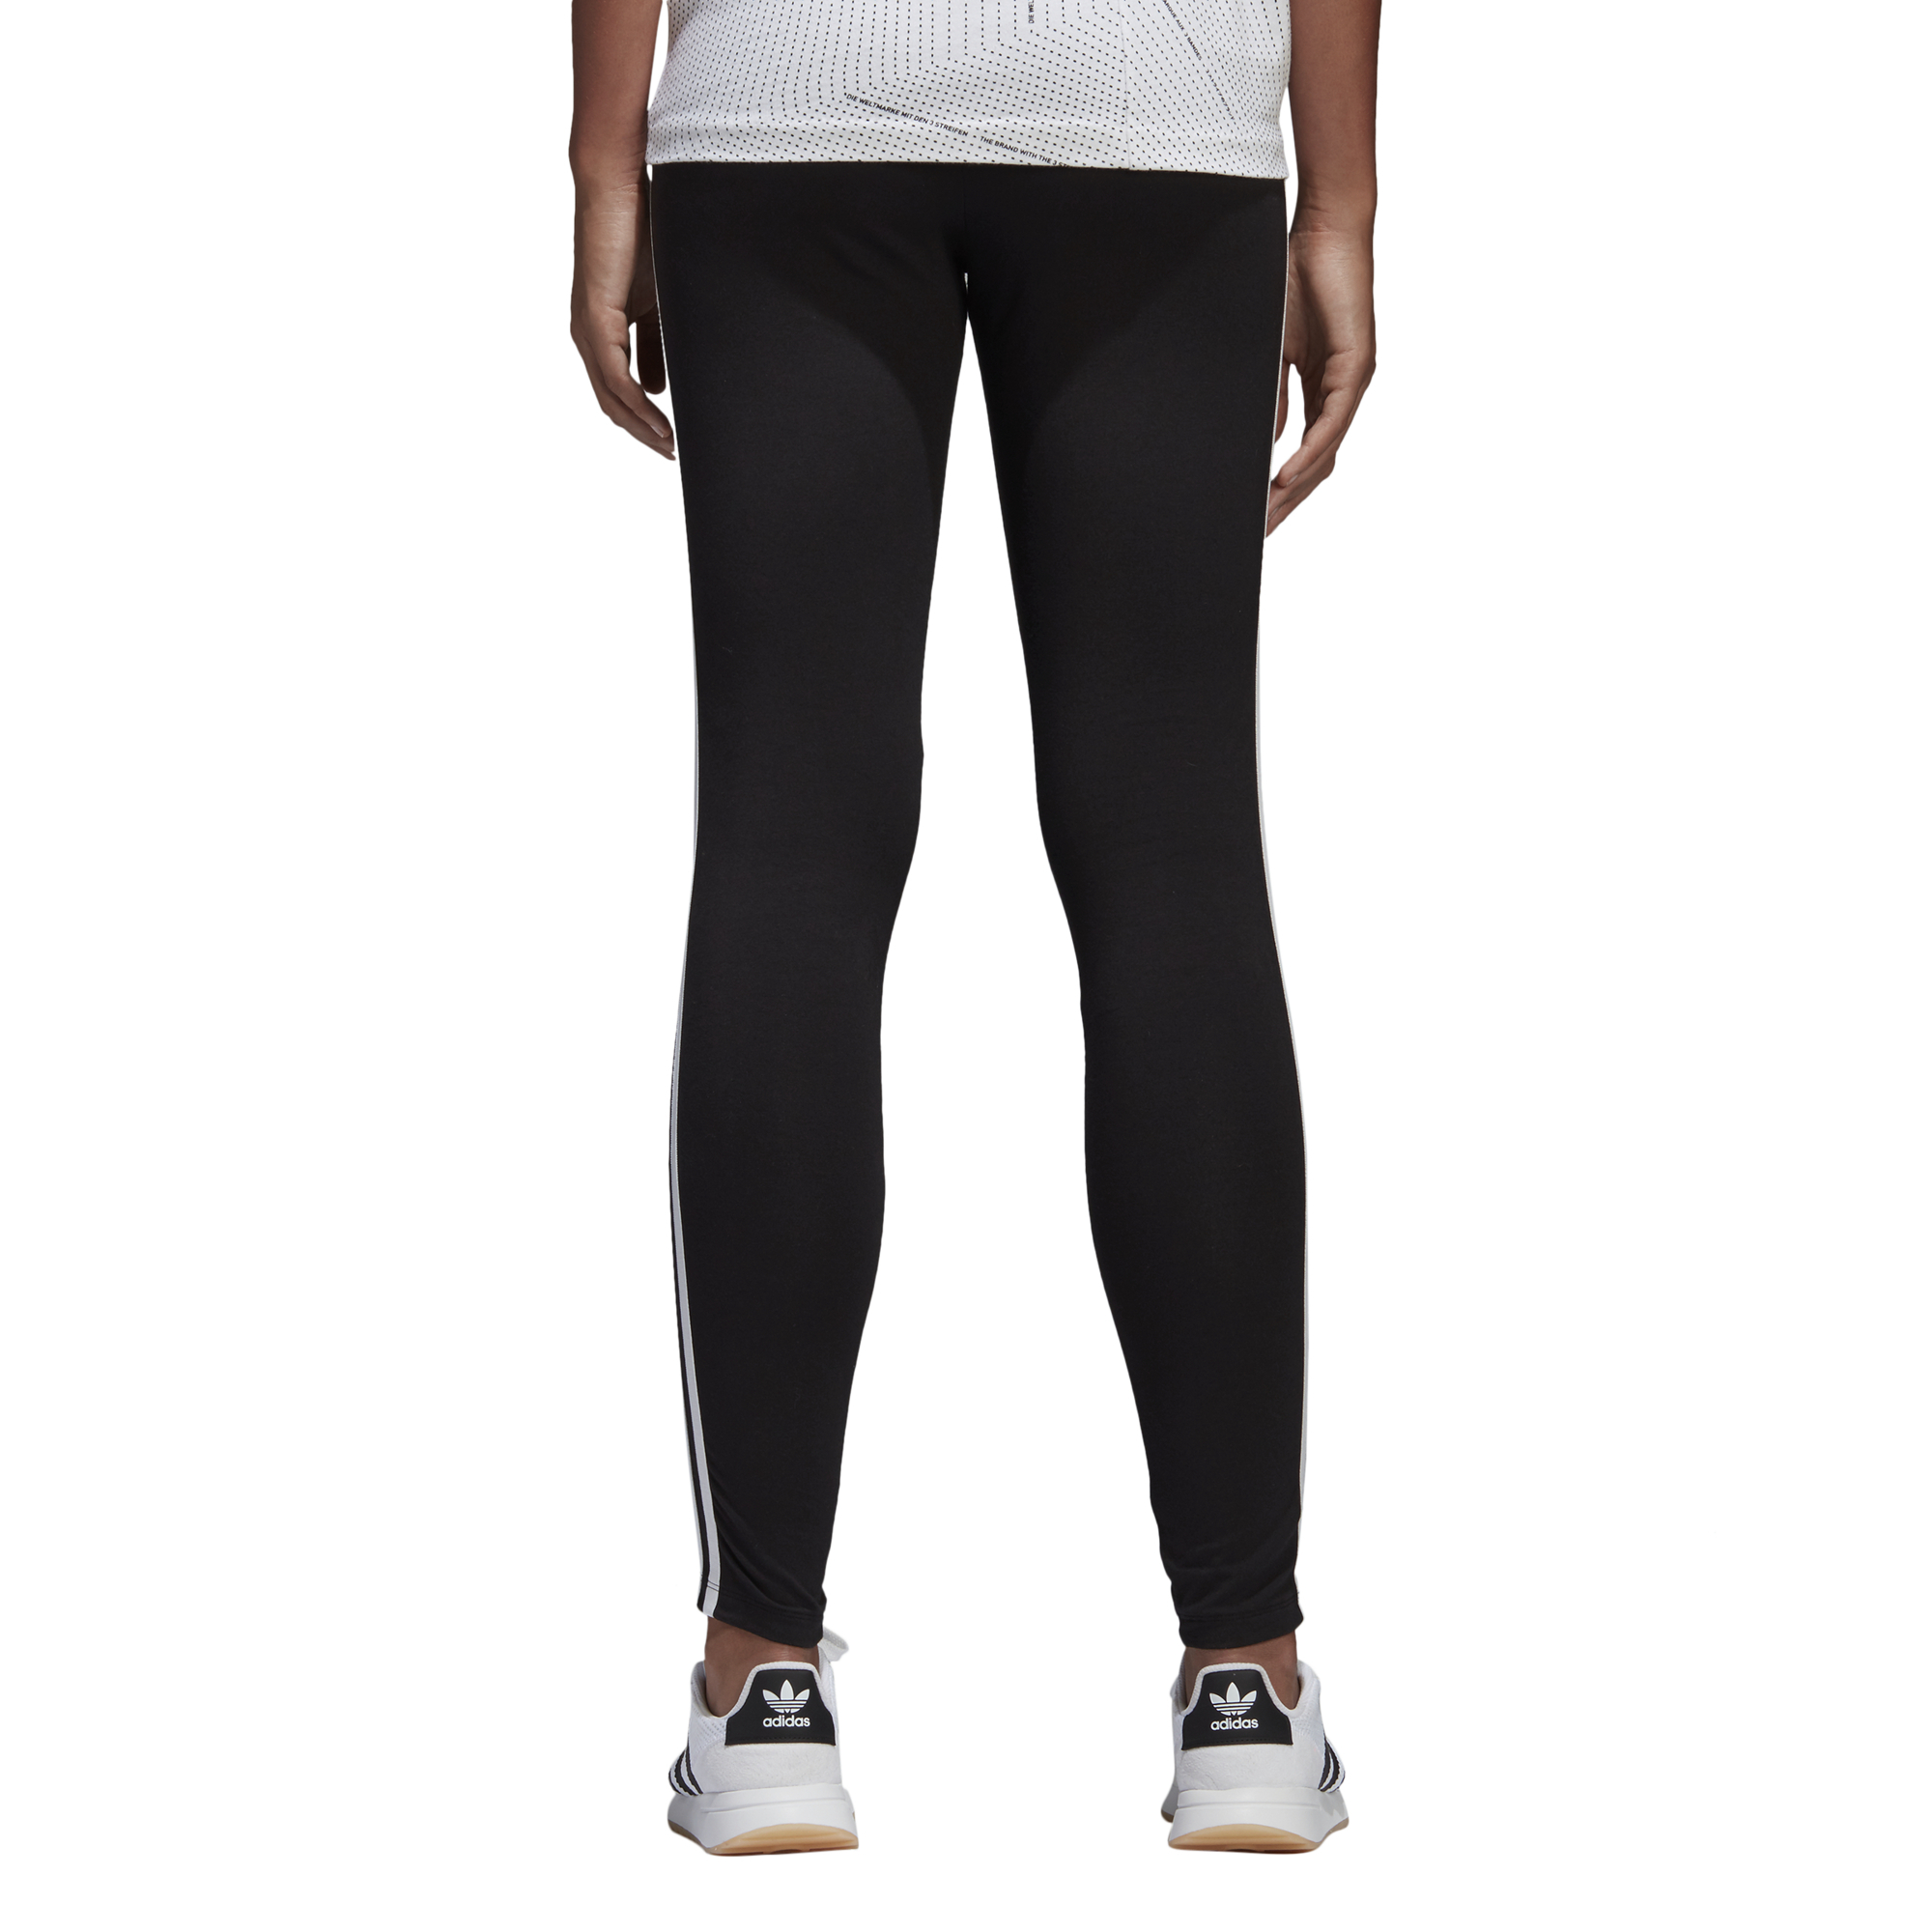 Adidas Womens 3 Stripes Leggings Black - Boardvillage Streetwear ...